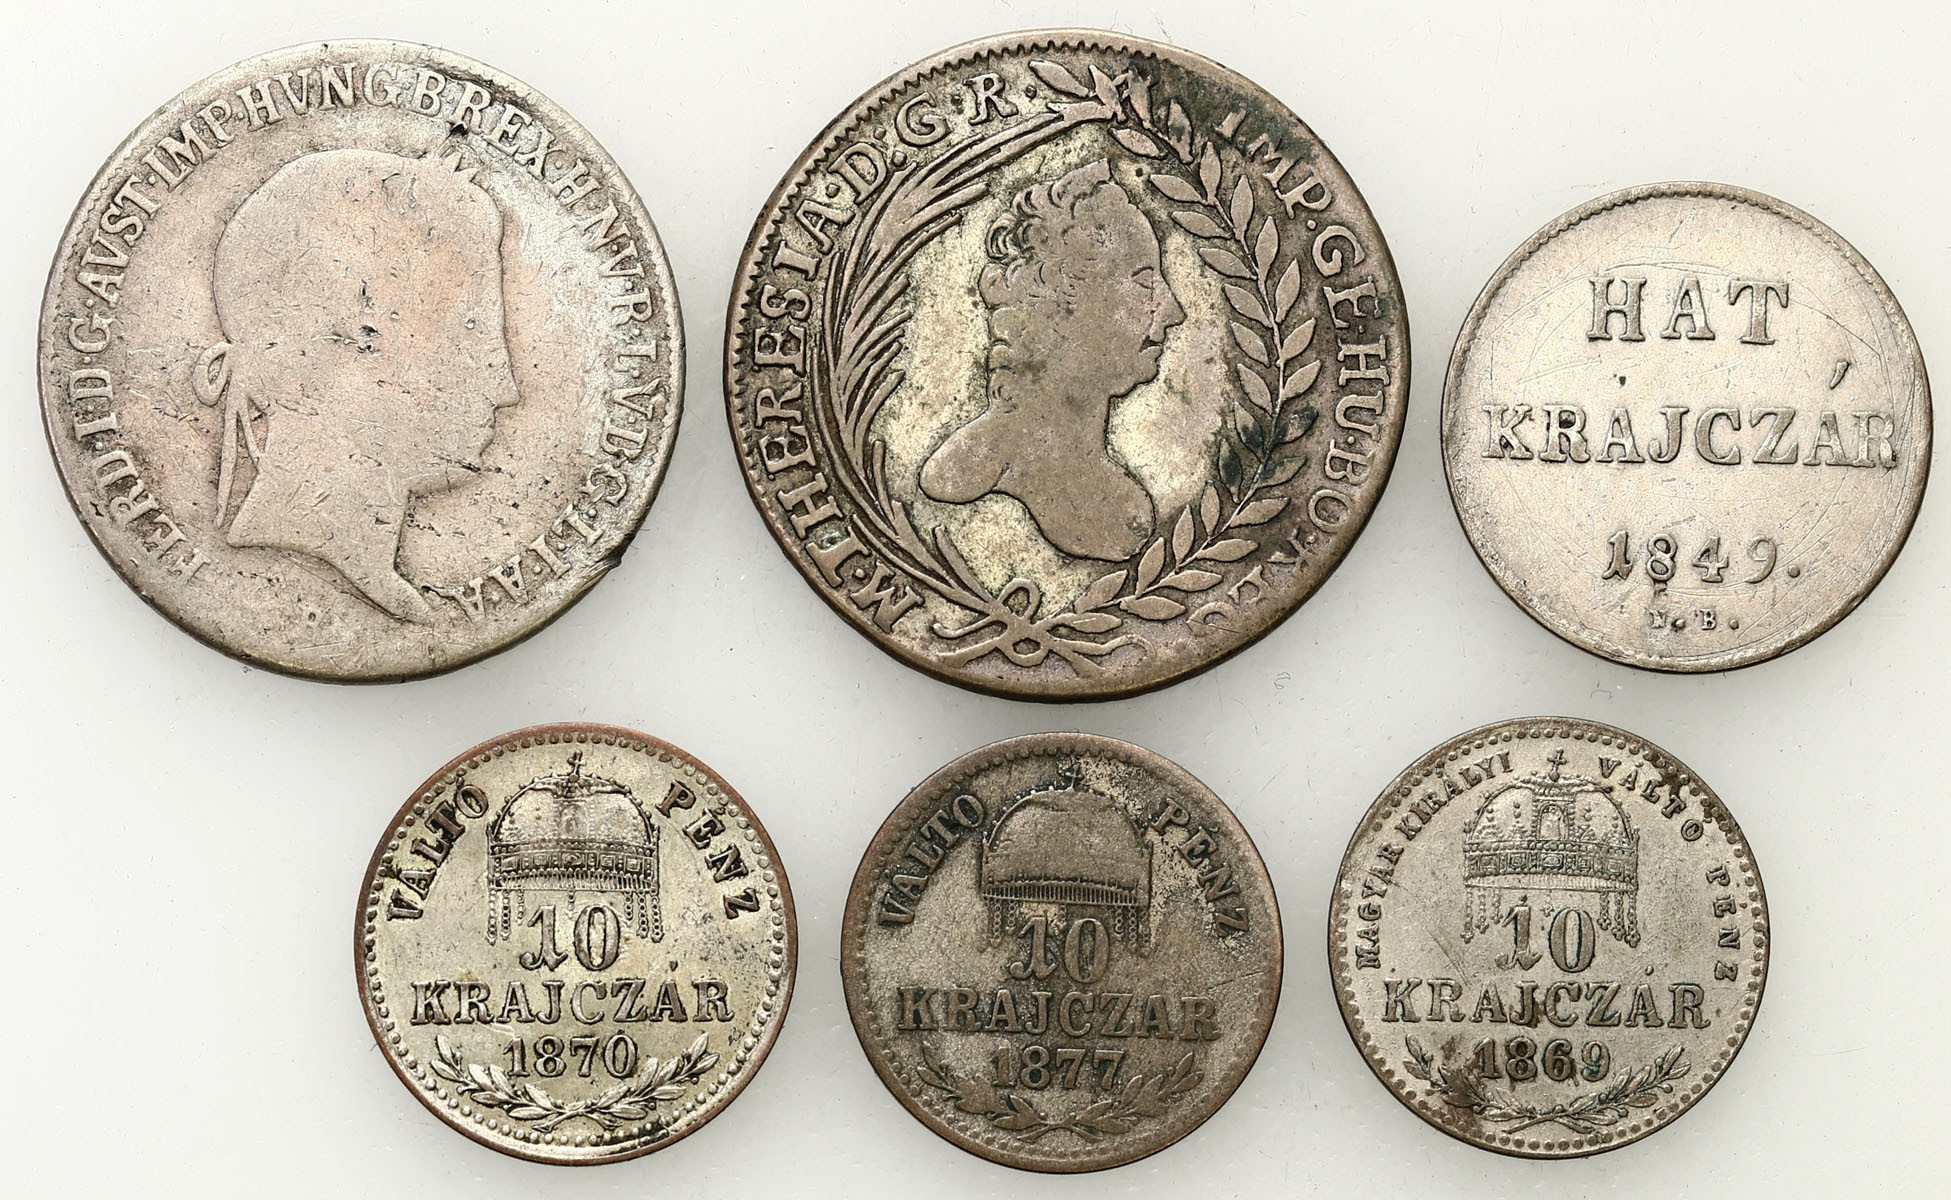 Węgry. 20 krajcarów 1765, 1840, 6 krajcarów 1848, 10 krajcarów 1870-1877, zestaw 6 monet